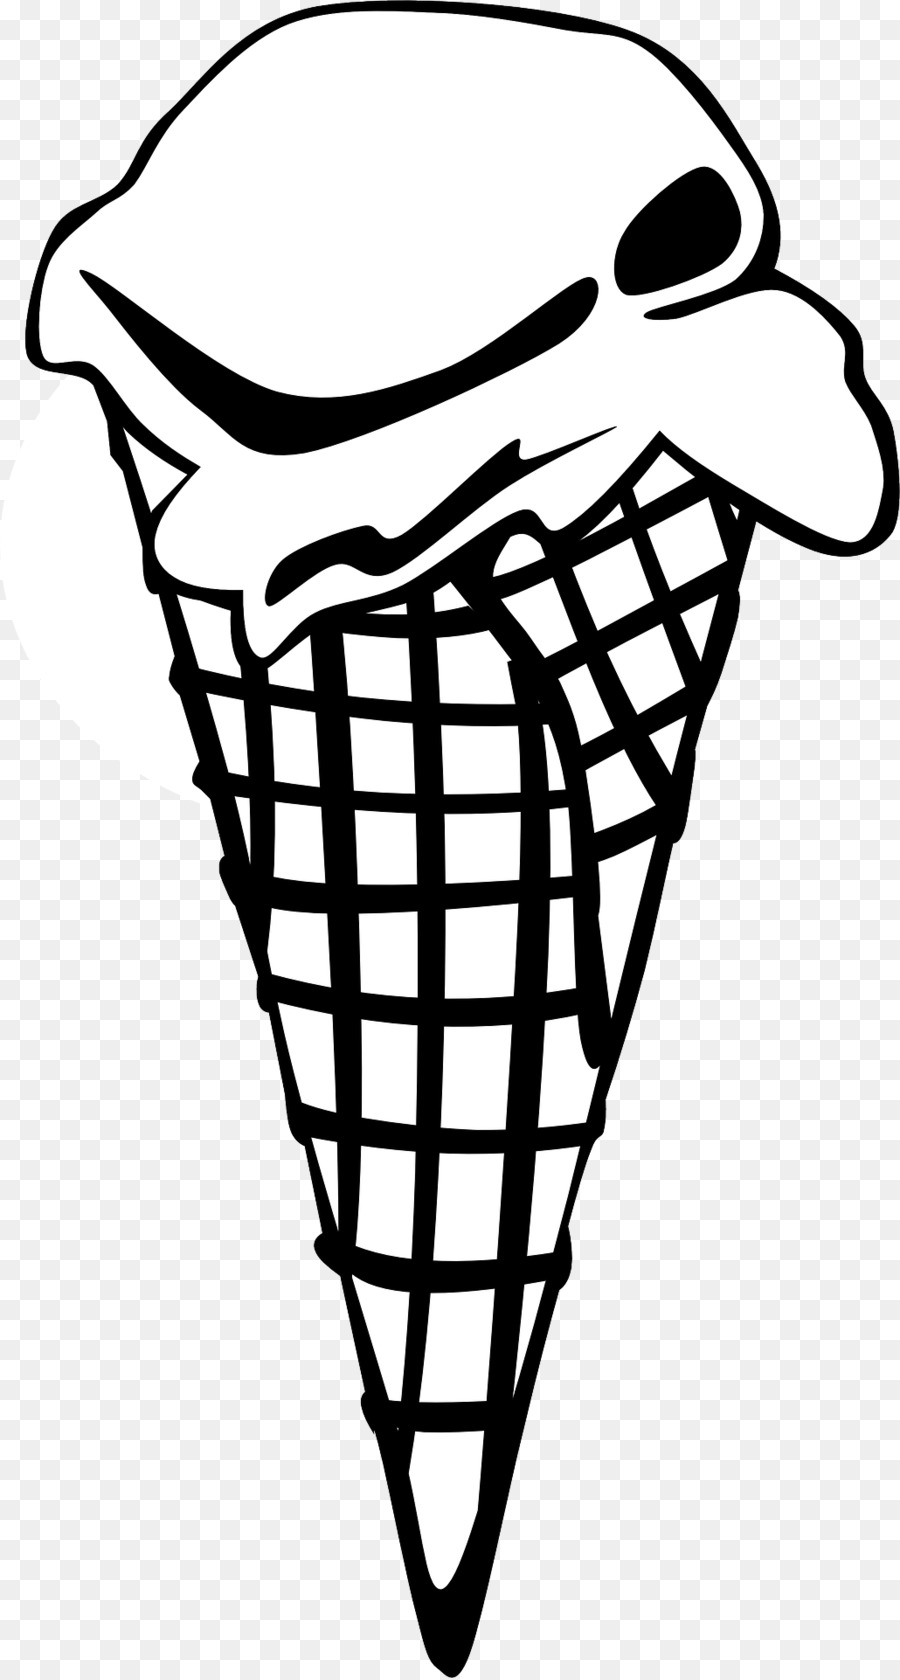 Ice Cream Cones Sundae Chocolate Ice Cream   Cones - Icecream Cone Black And White, Transparent background PNG HD thumbnail